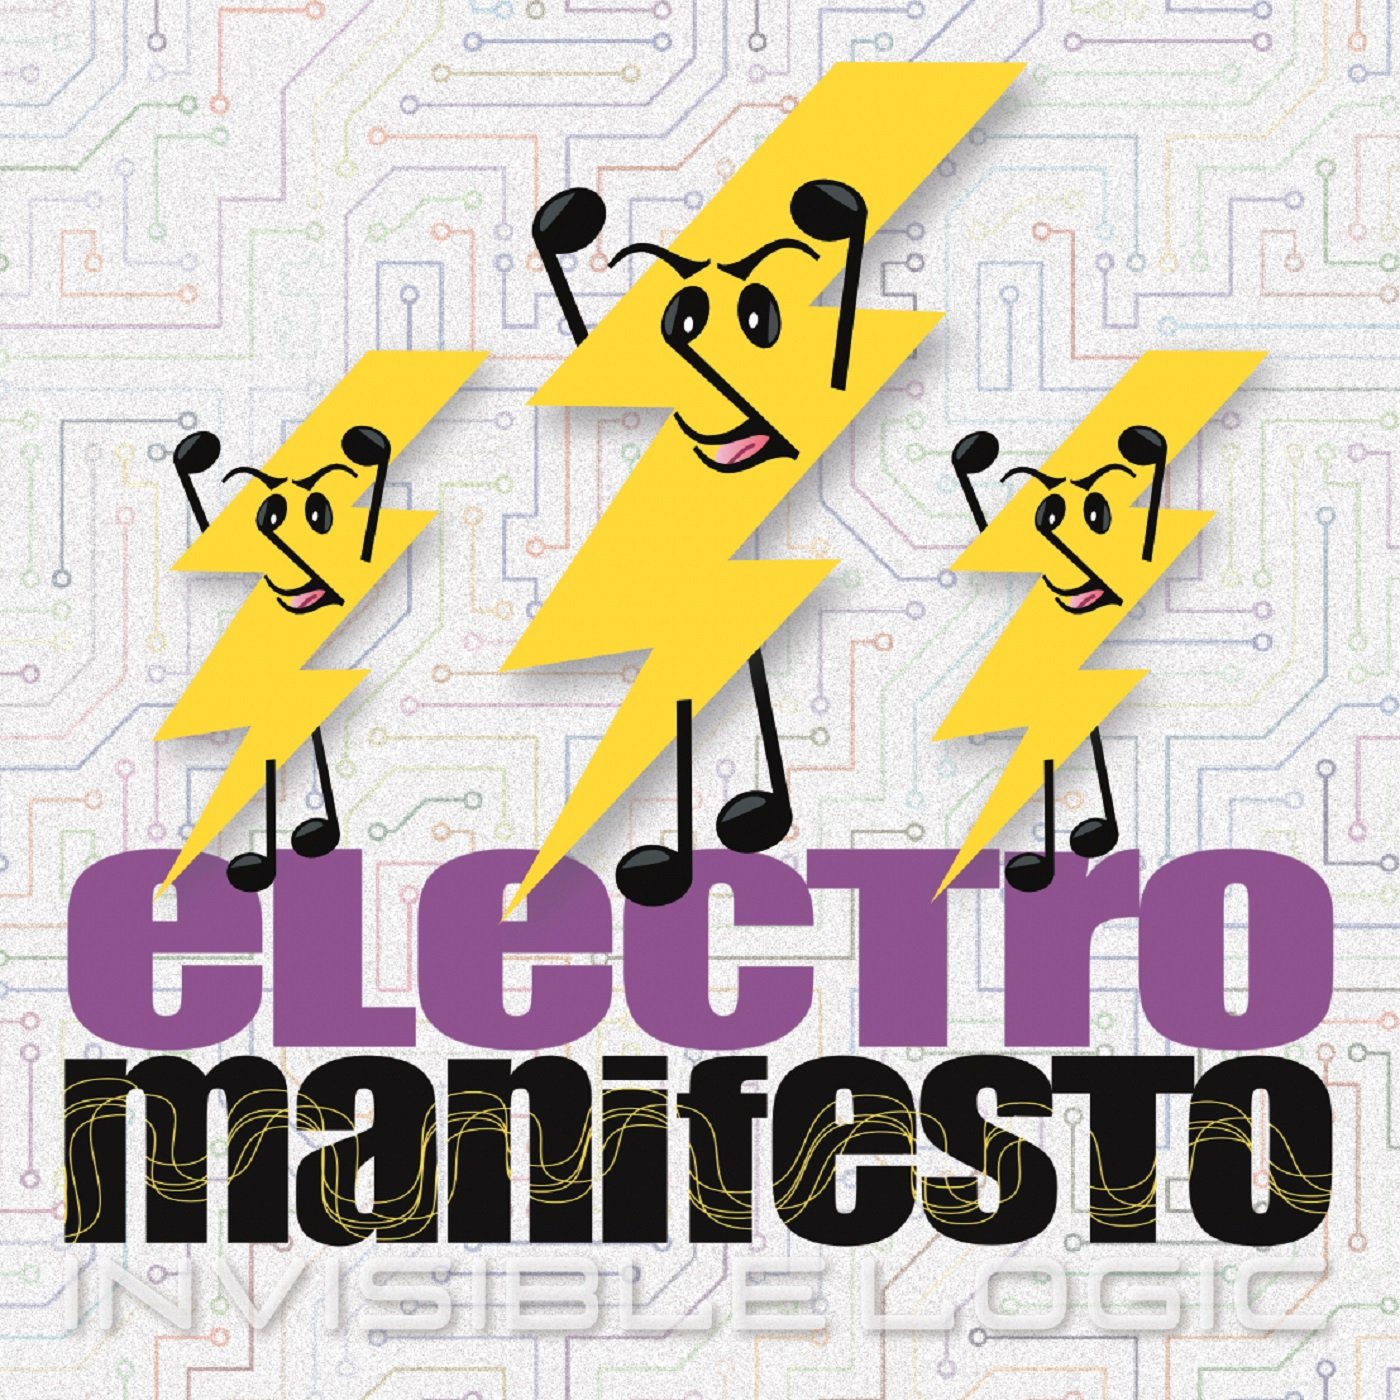 Electro Manifesto: Invisible Logic